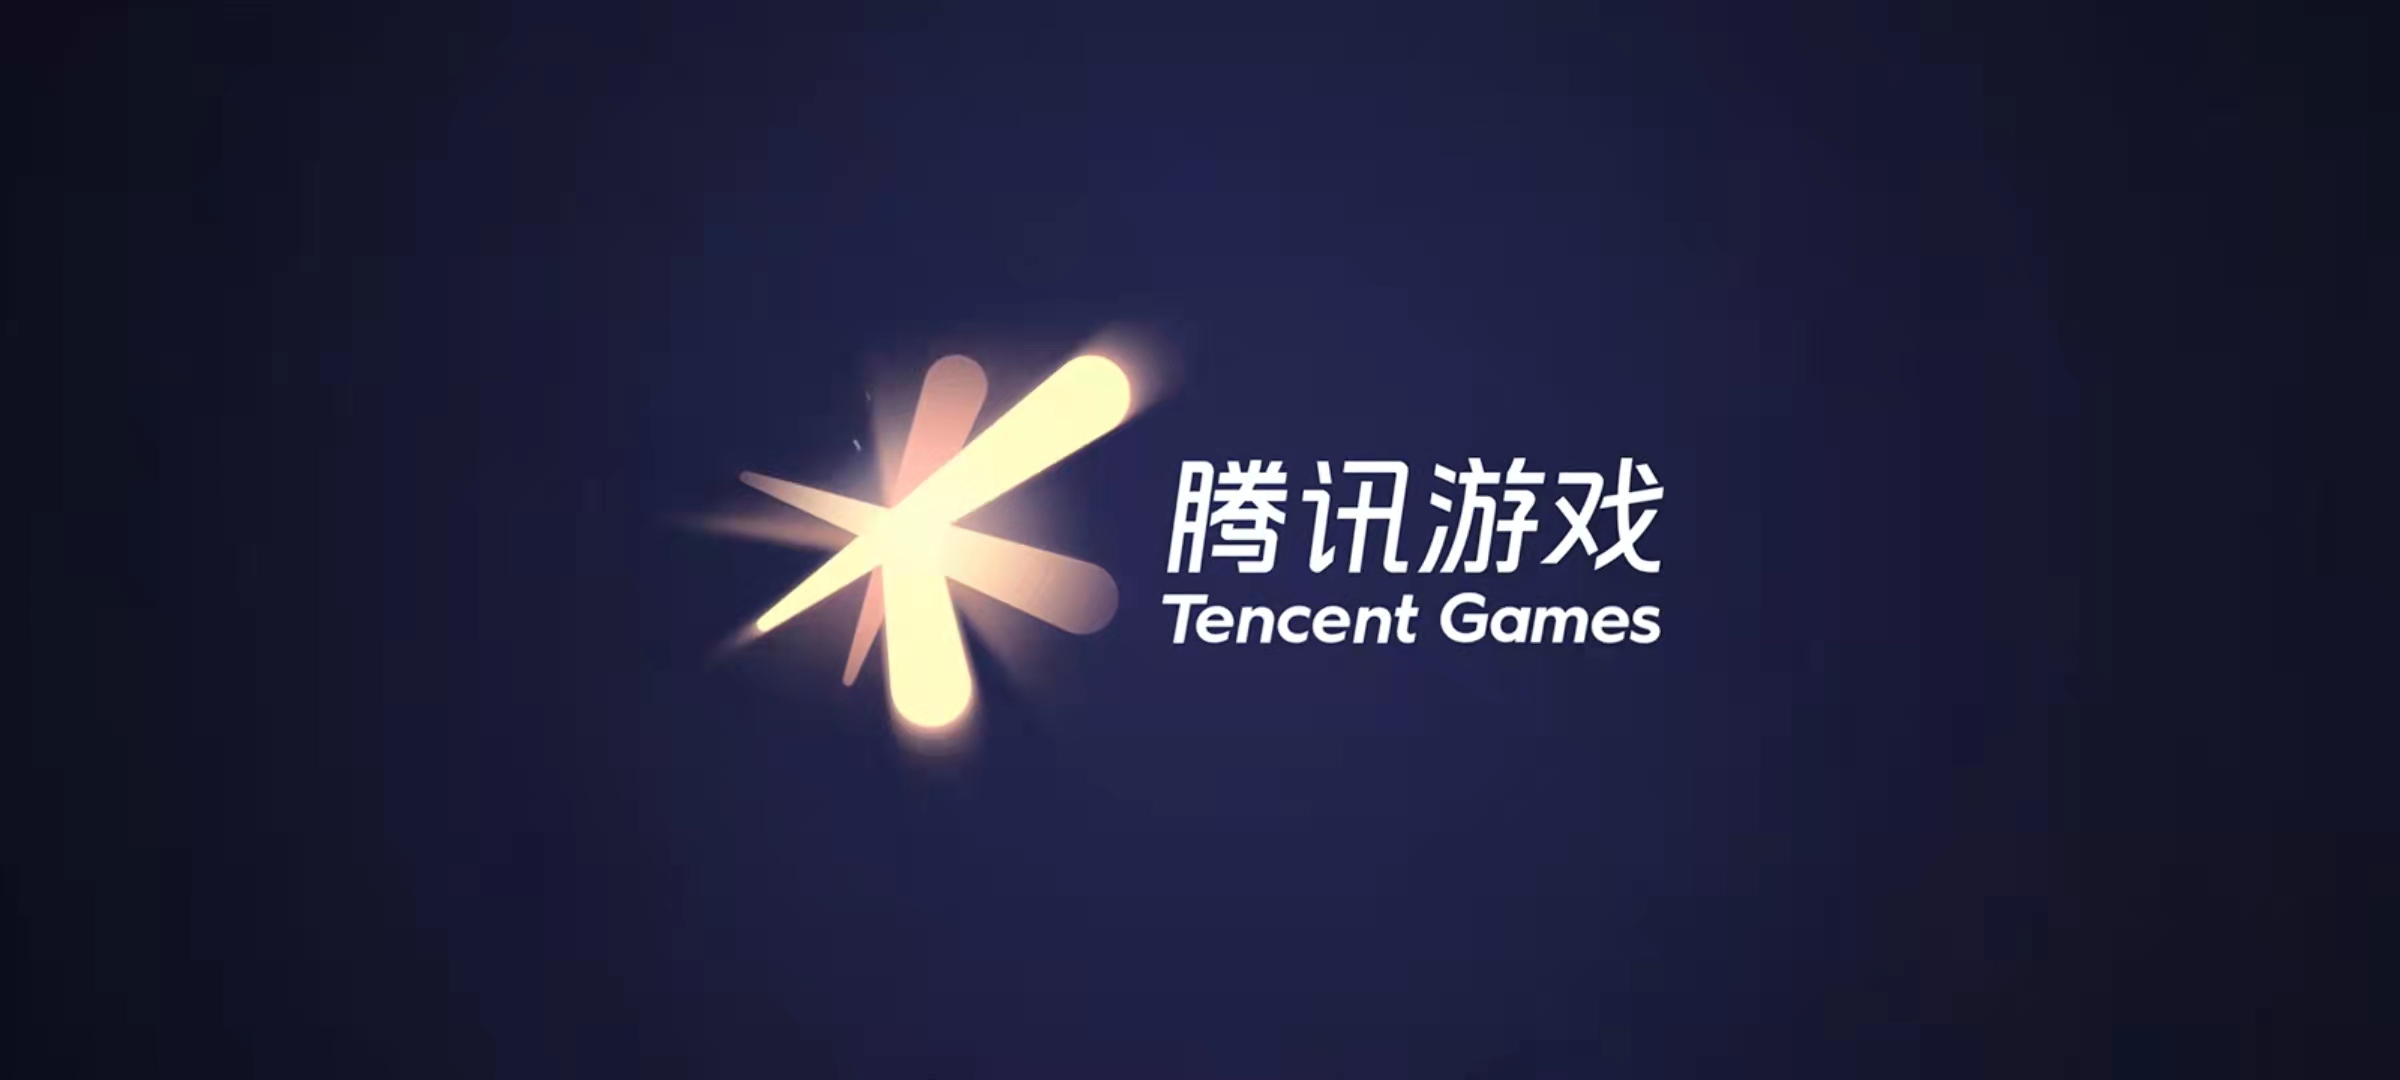 2021年游戏产业报告发布 中国手游玩家人均氪金344元